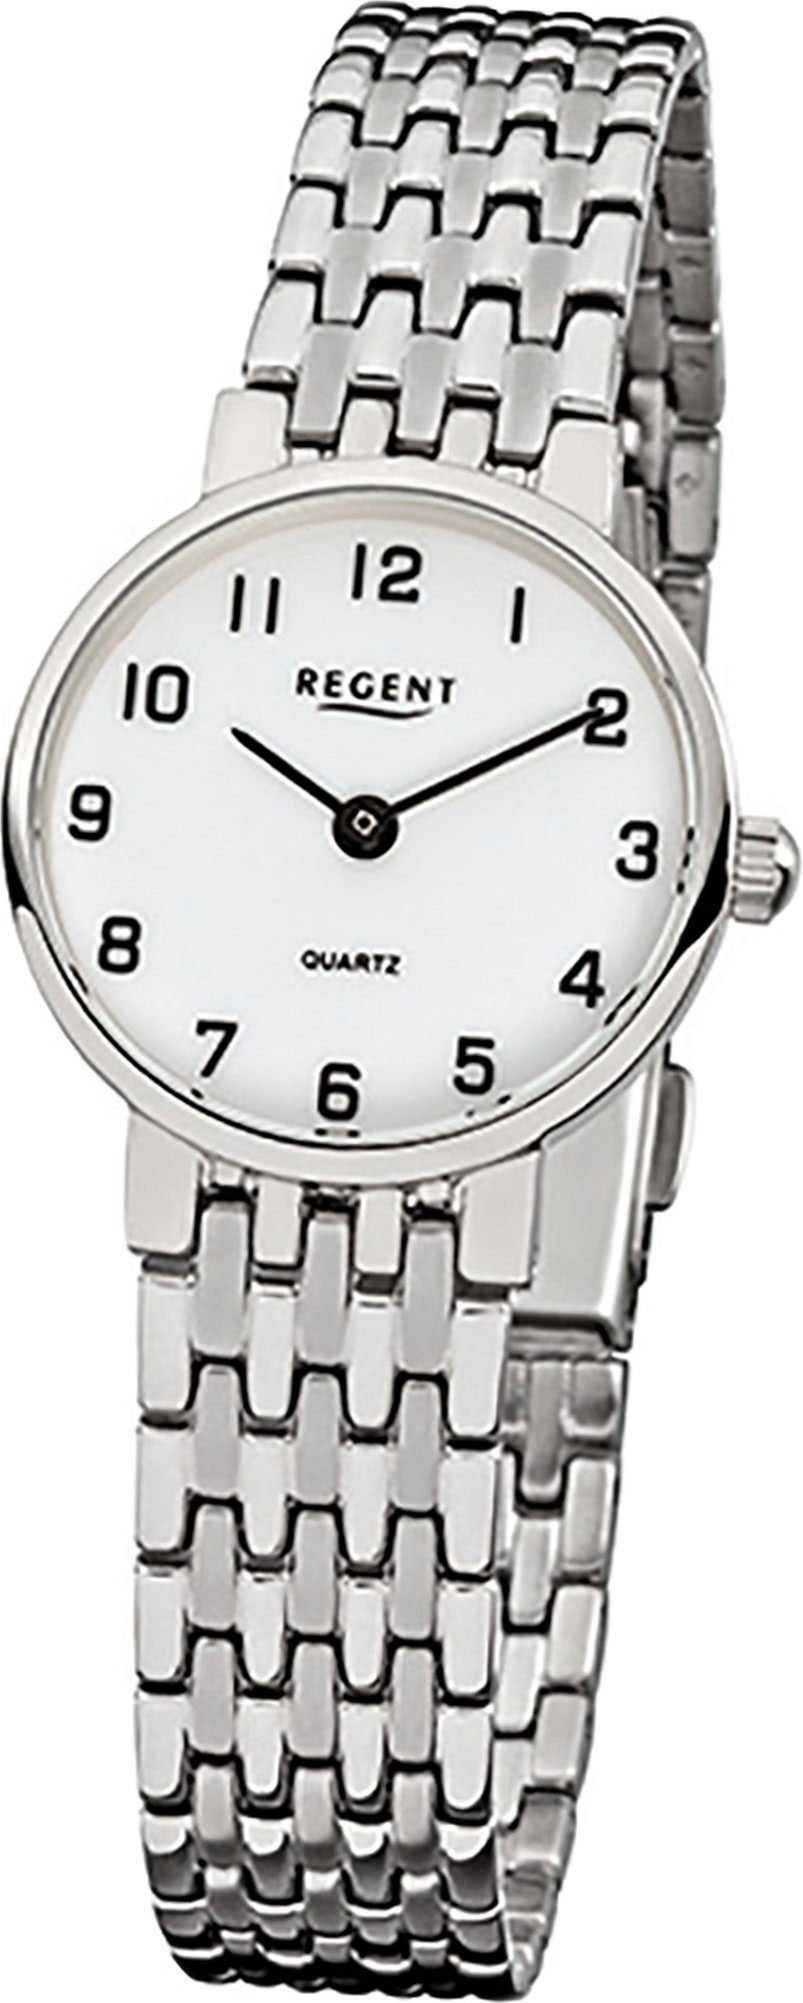 rund, Regent (ca. silber Armbanduhr Damen Edelstahlarmband Quarzuhr 24mm), Regent Damen-Armbanduhr Analog klein F-609,